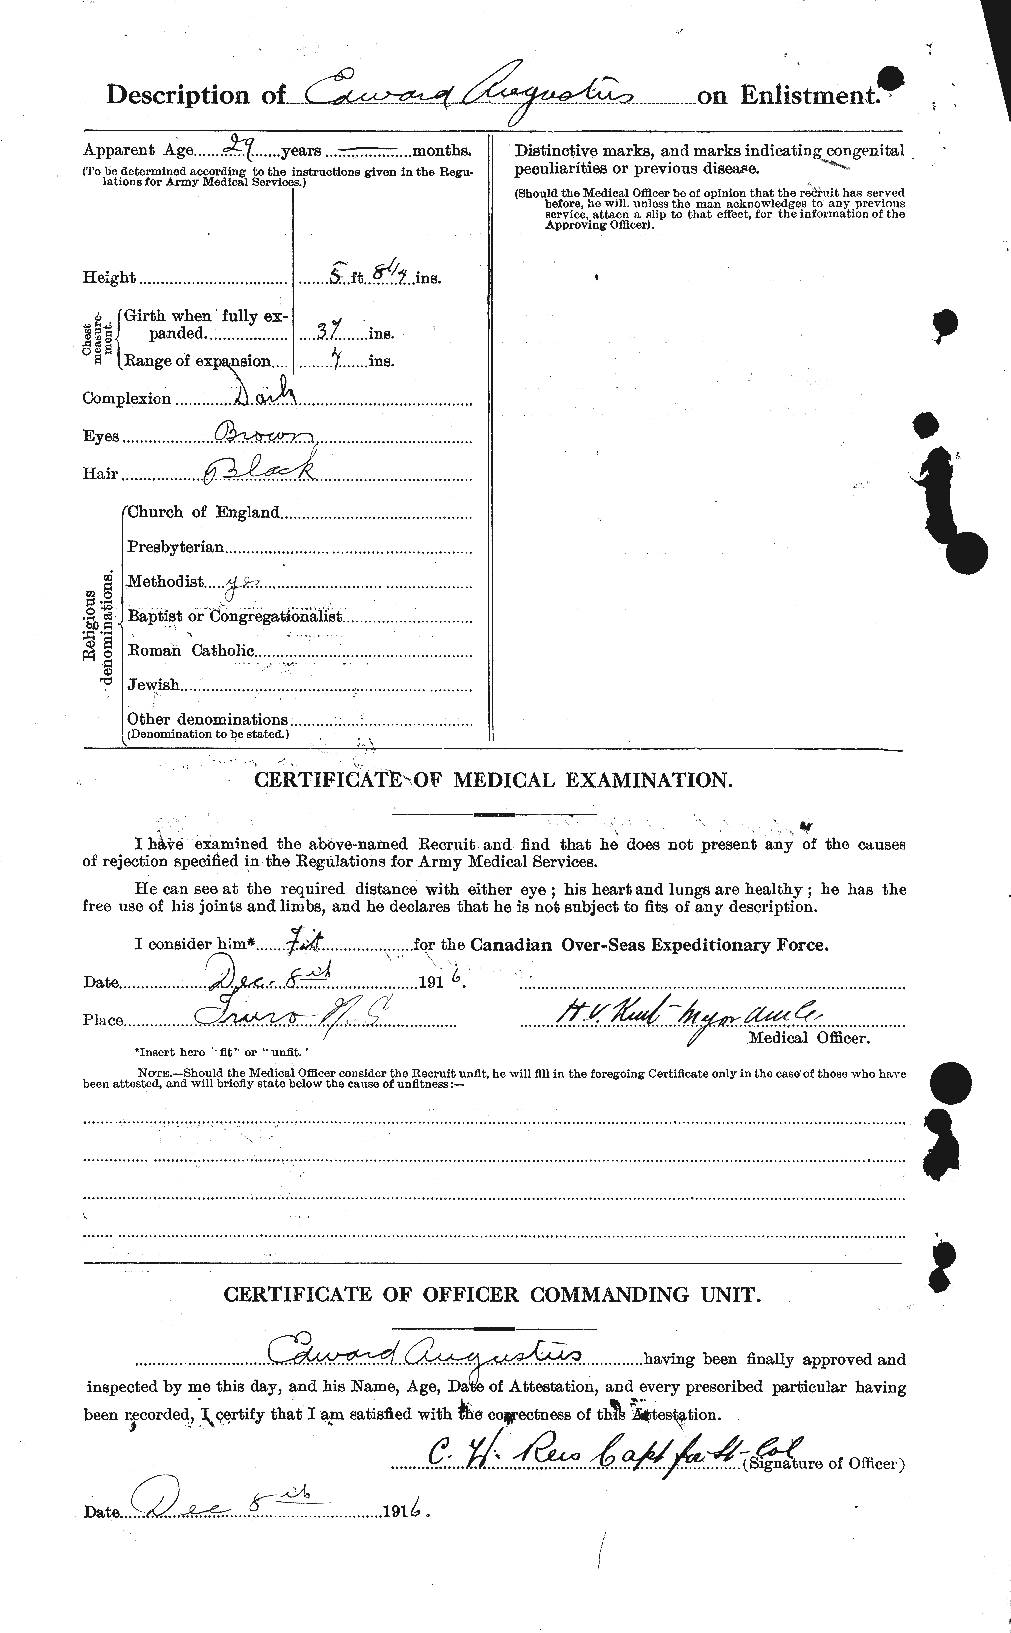 Dossiers du Personnel de la Première Guerre mondiale - CEC 224295b